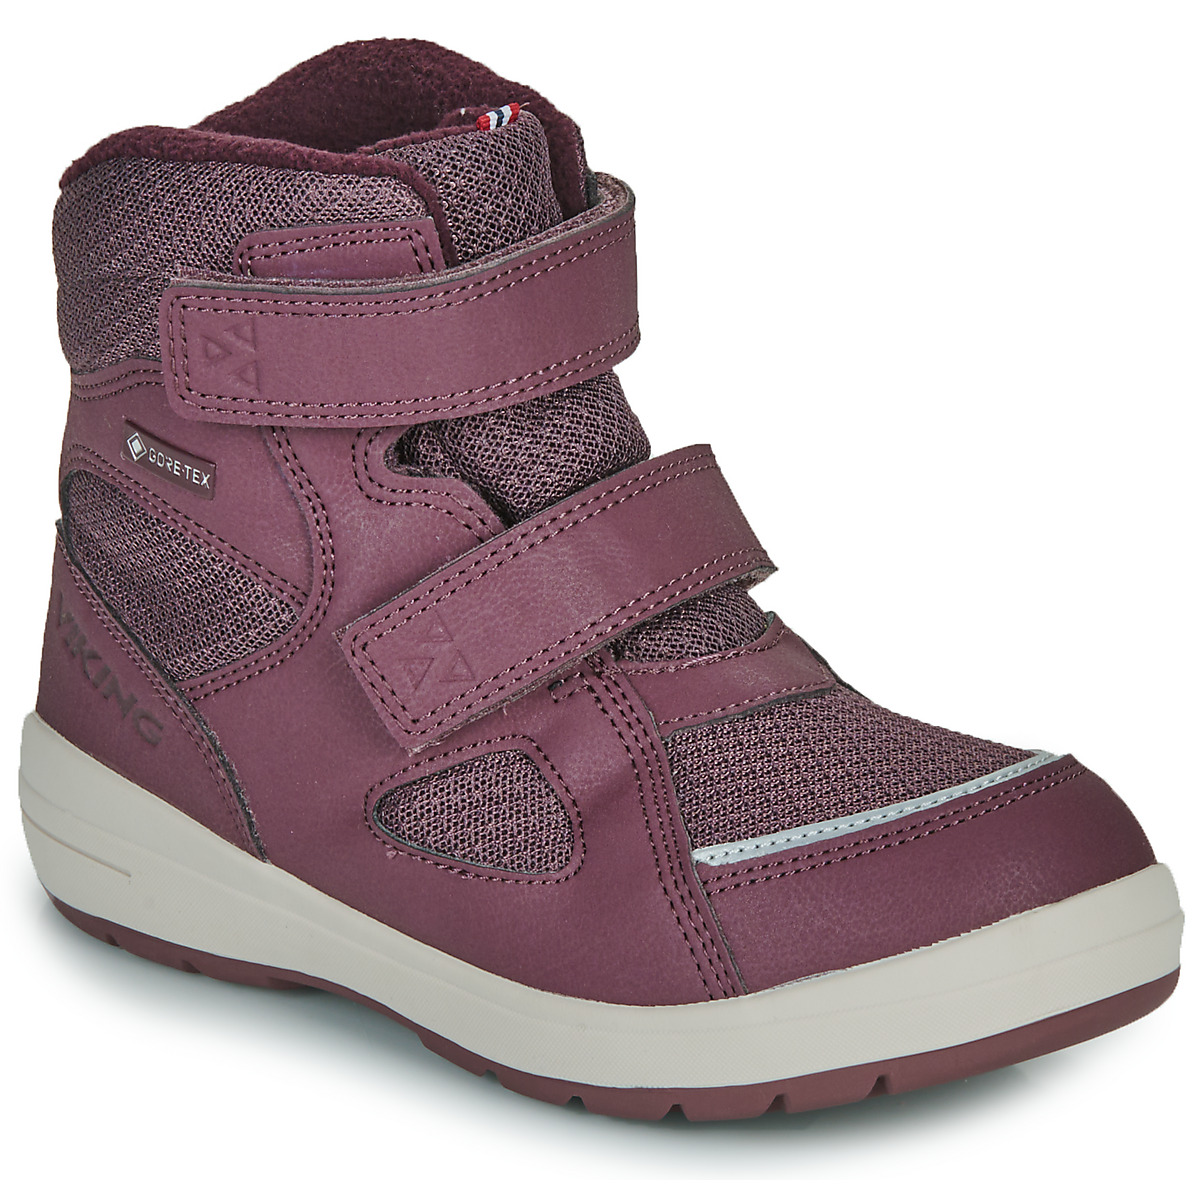 Schuhe Mädchen Schneestiefel VIKING FOOTWEAR Spro Warm GTX 2V Violett / Weiss